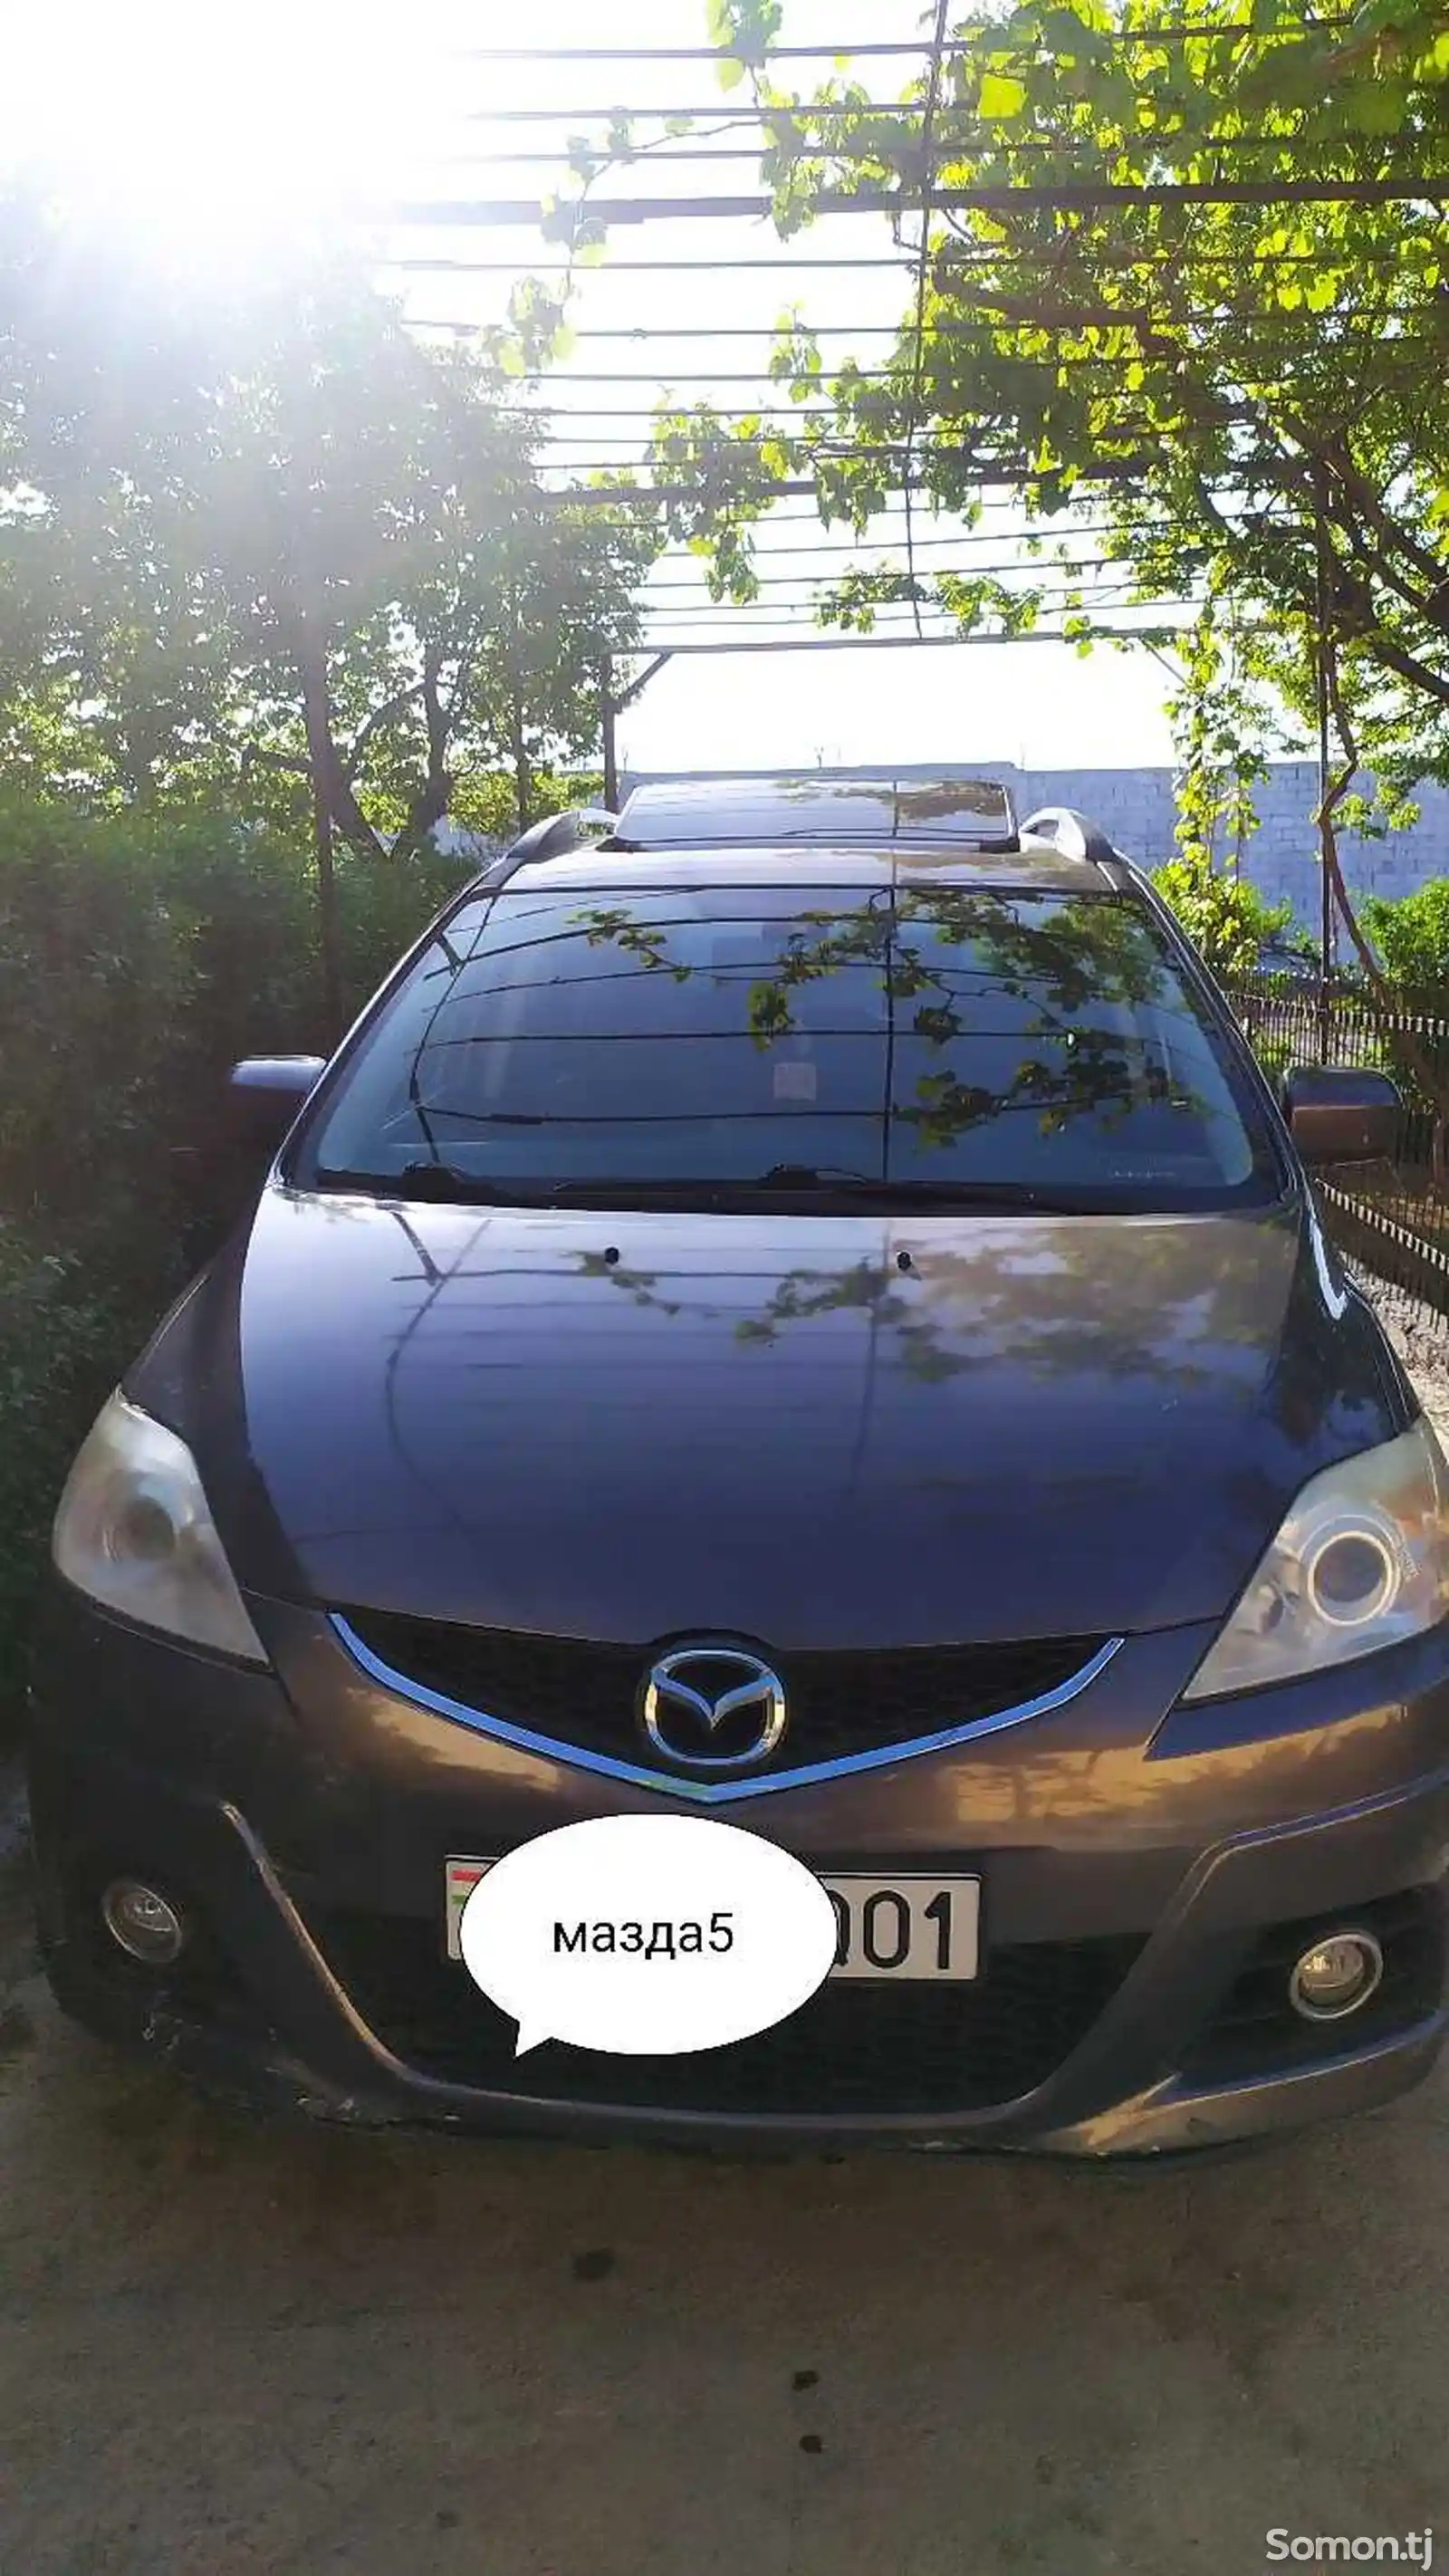 Mazda 5, 2009-11